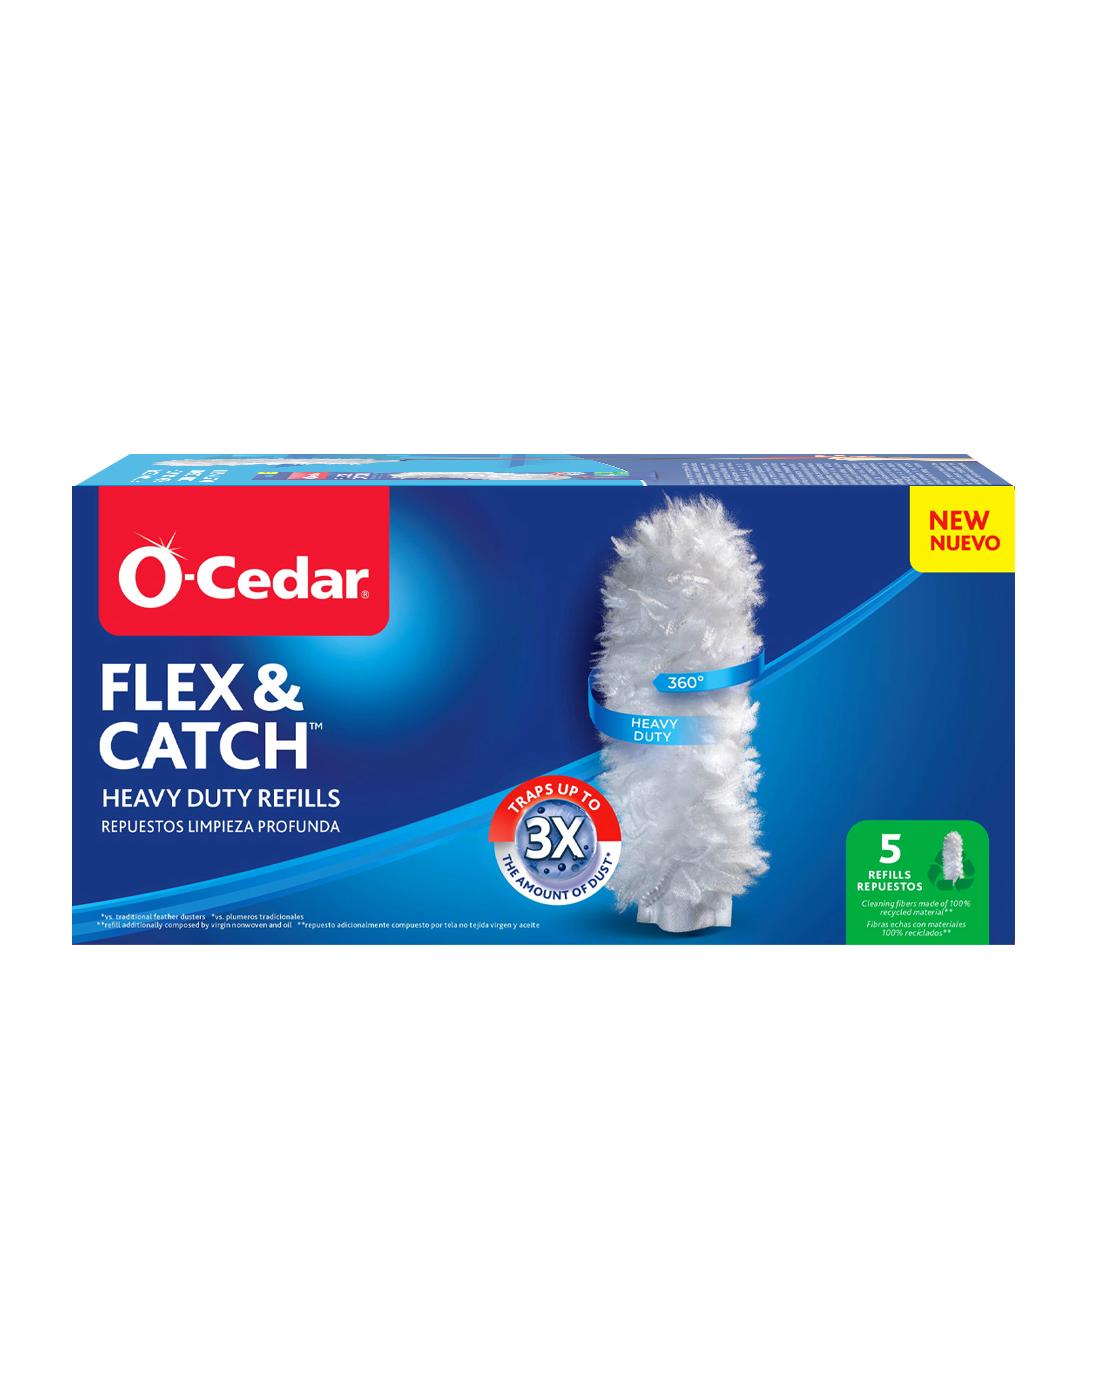 O-Cedar Flex & Catch Refills; image 1 of 10